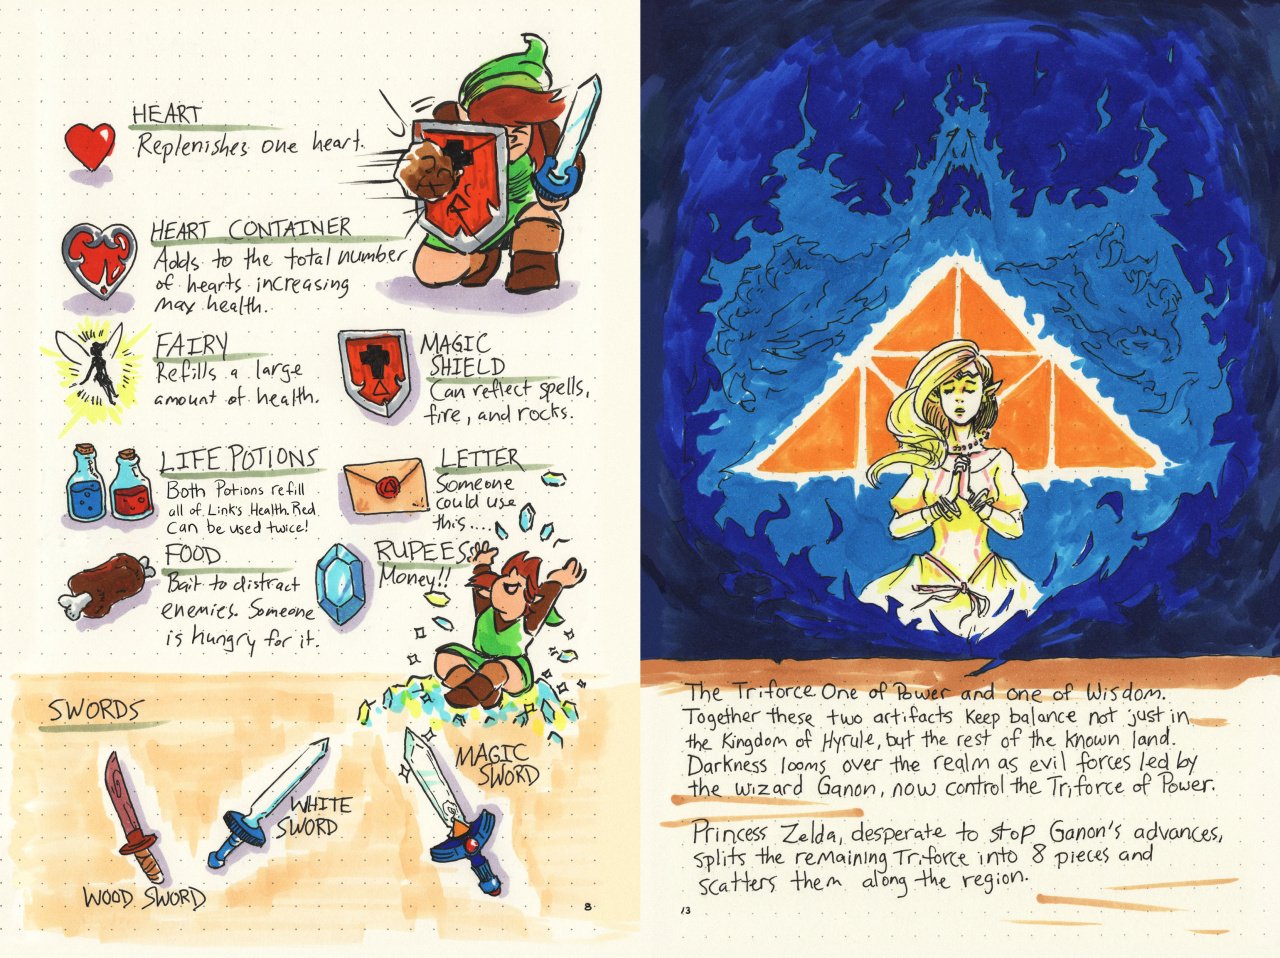 Legend of Zelda Foldable Map Poster Nintendo NES Instruction